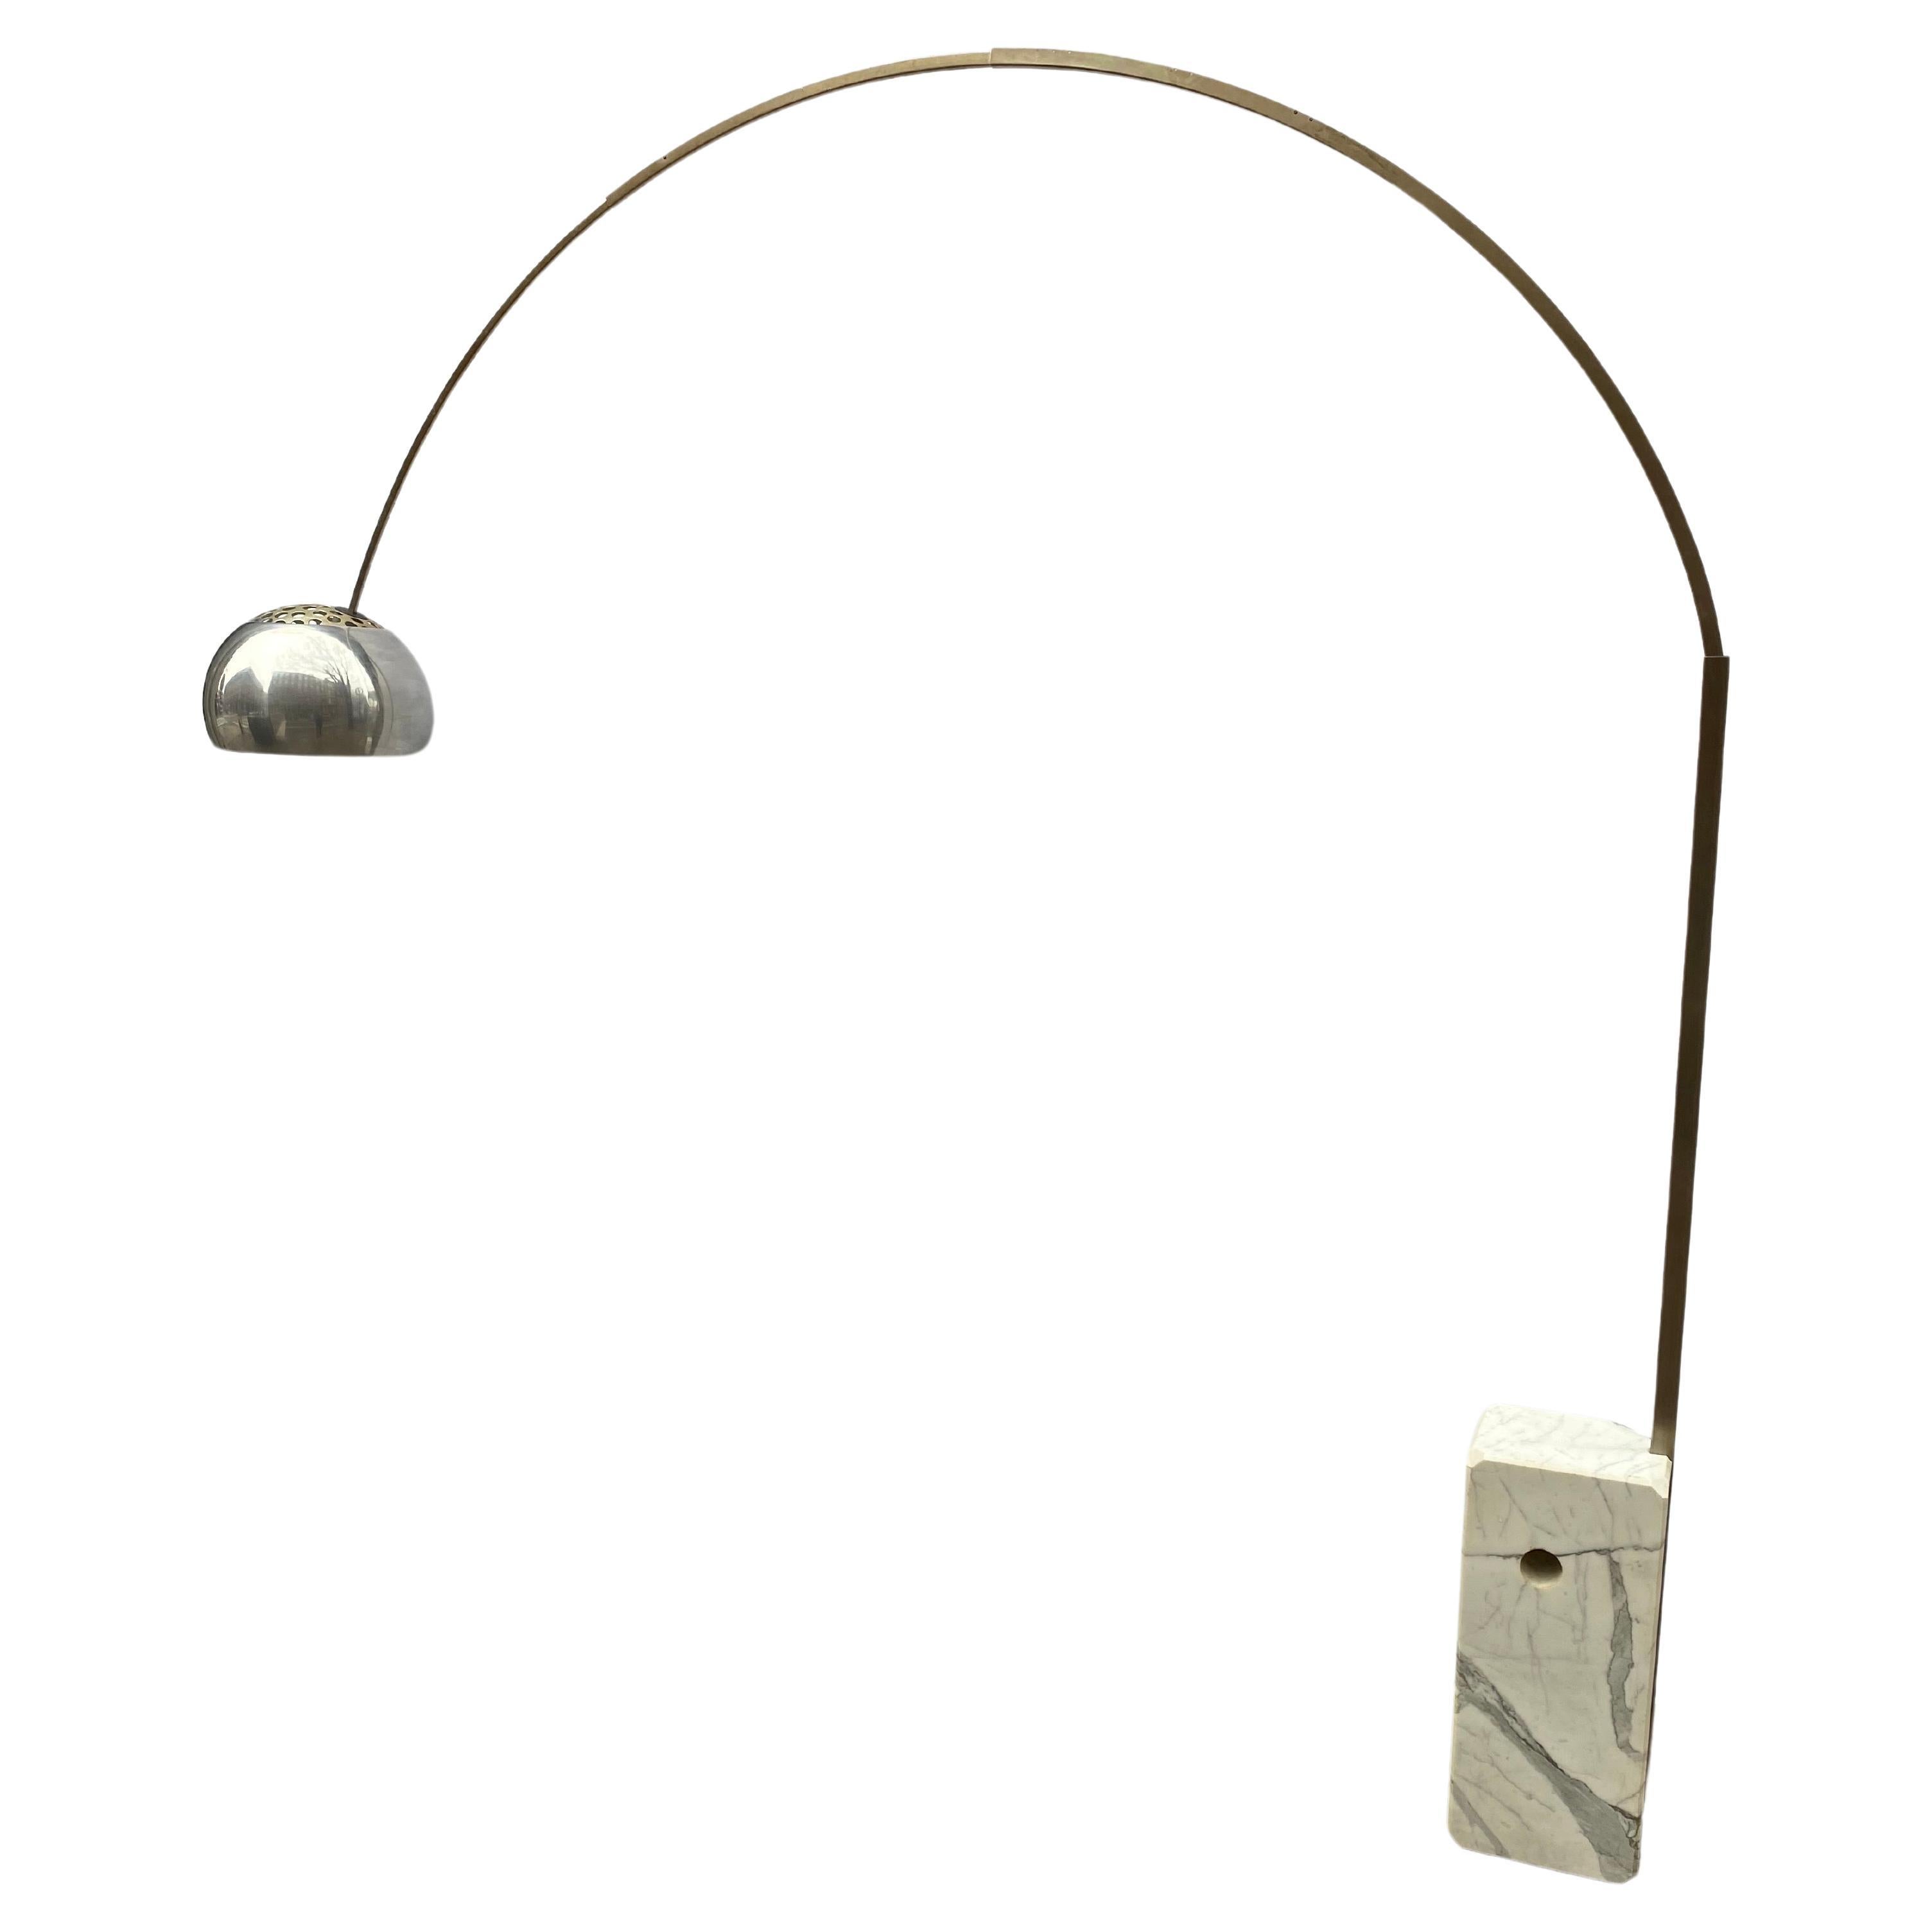 Arco Floor lamp designed Achille & Pier Castiglioni for Flos